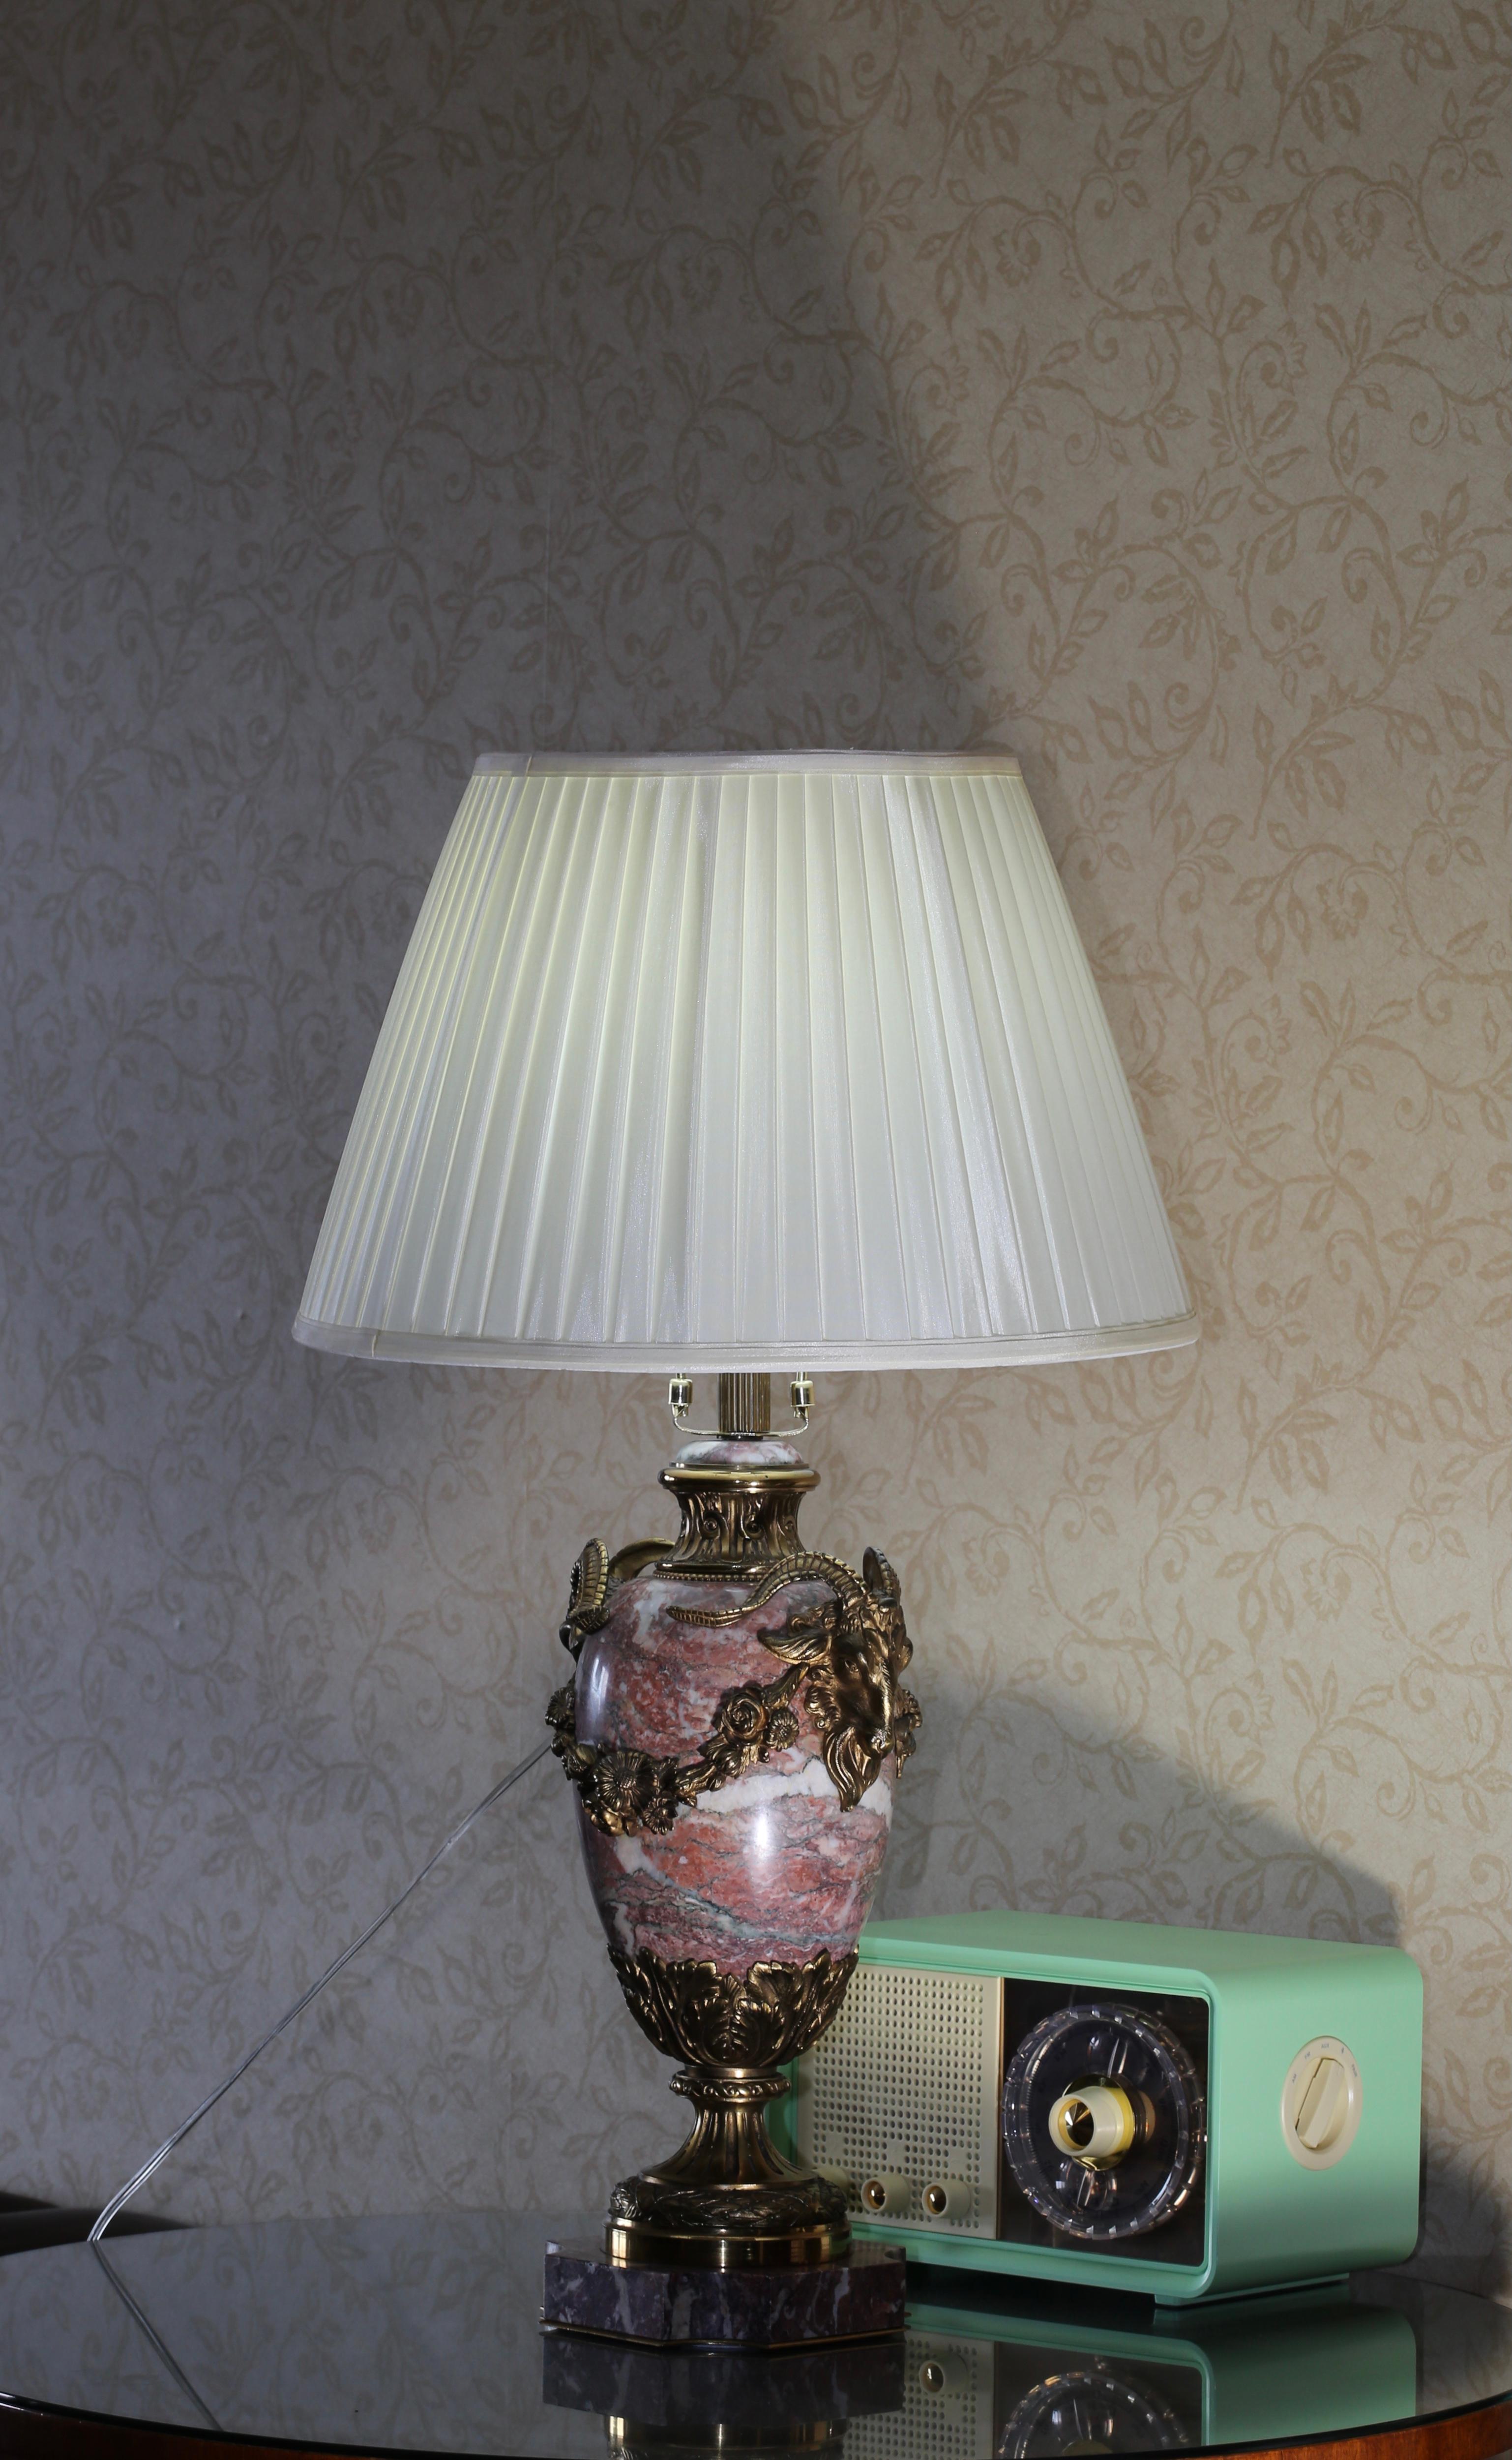 Doré Lampe de table en bronze doré début 20ème siècle - Christie's 2011 Auction en vente